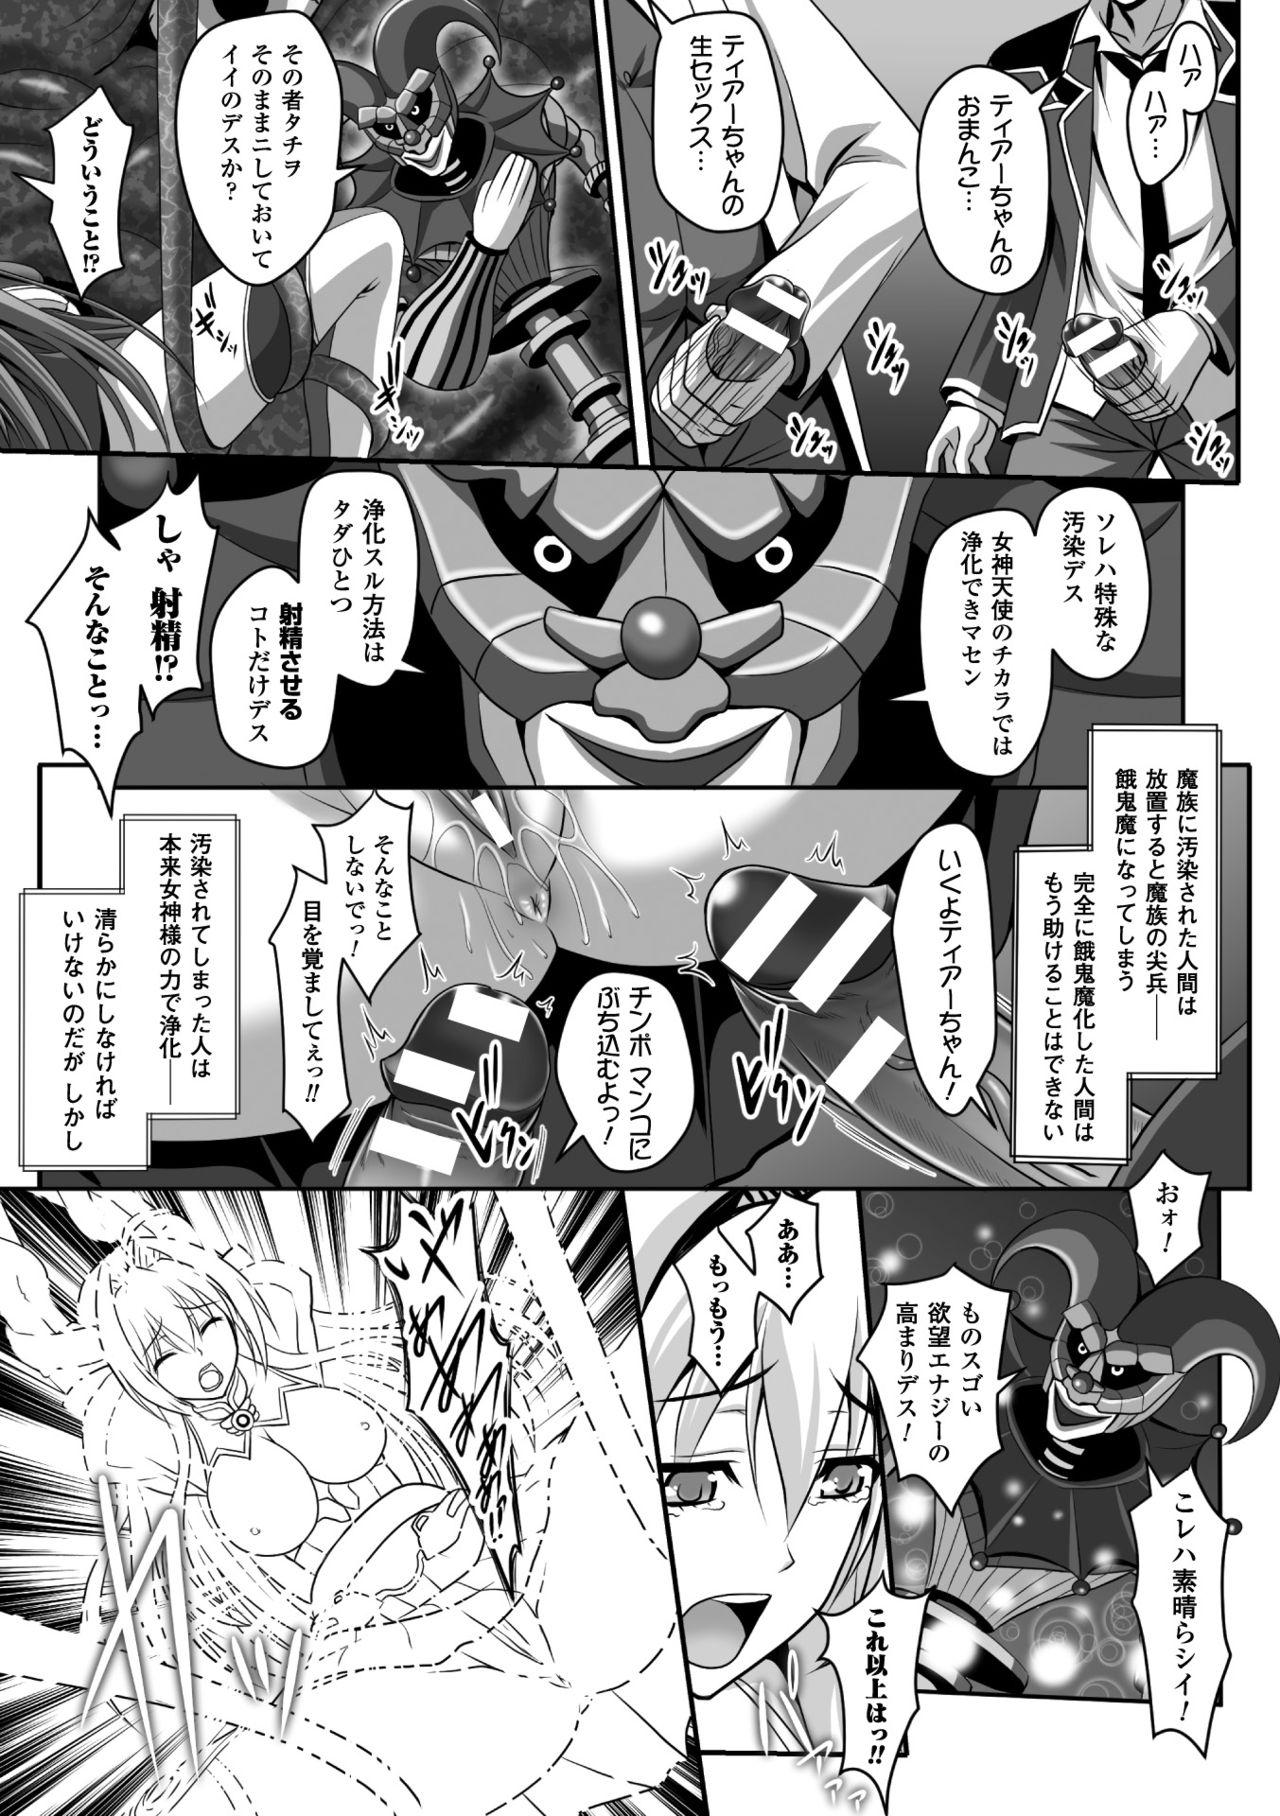 Boyfriend Seigi no Heroine Kangoku File Vol. 5 - Kuroinu kedakaki seijo wa hakudaku ni somaru Edging - Page 9